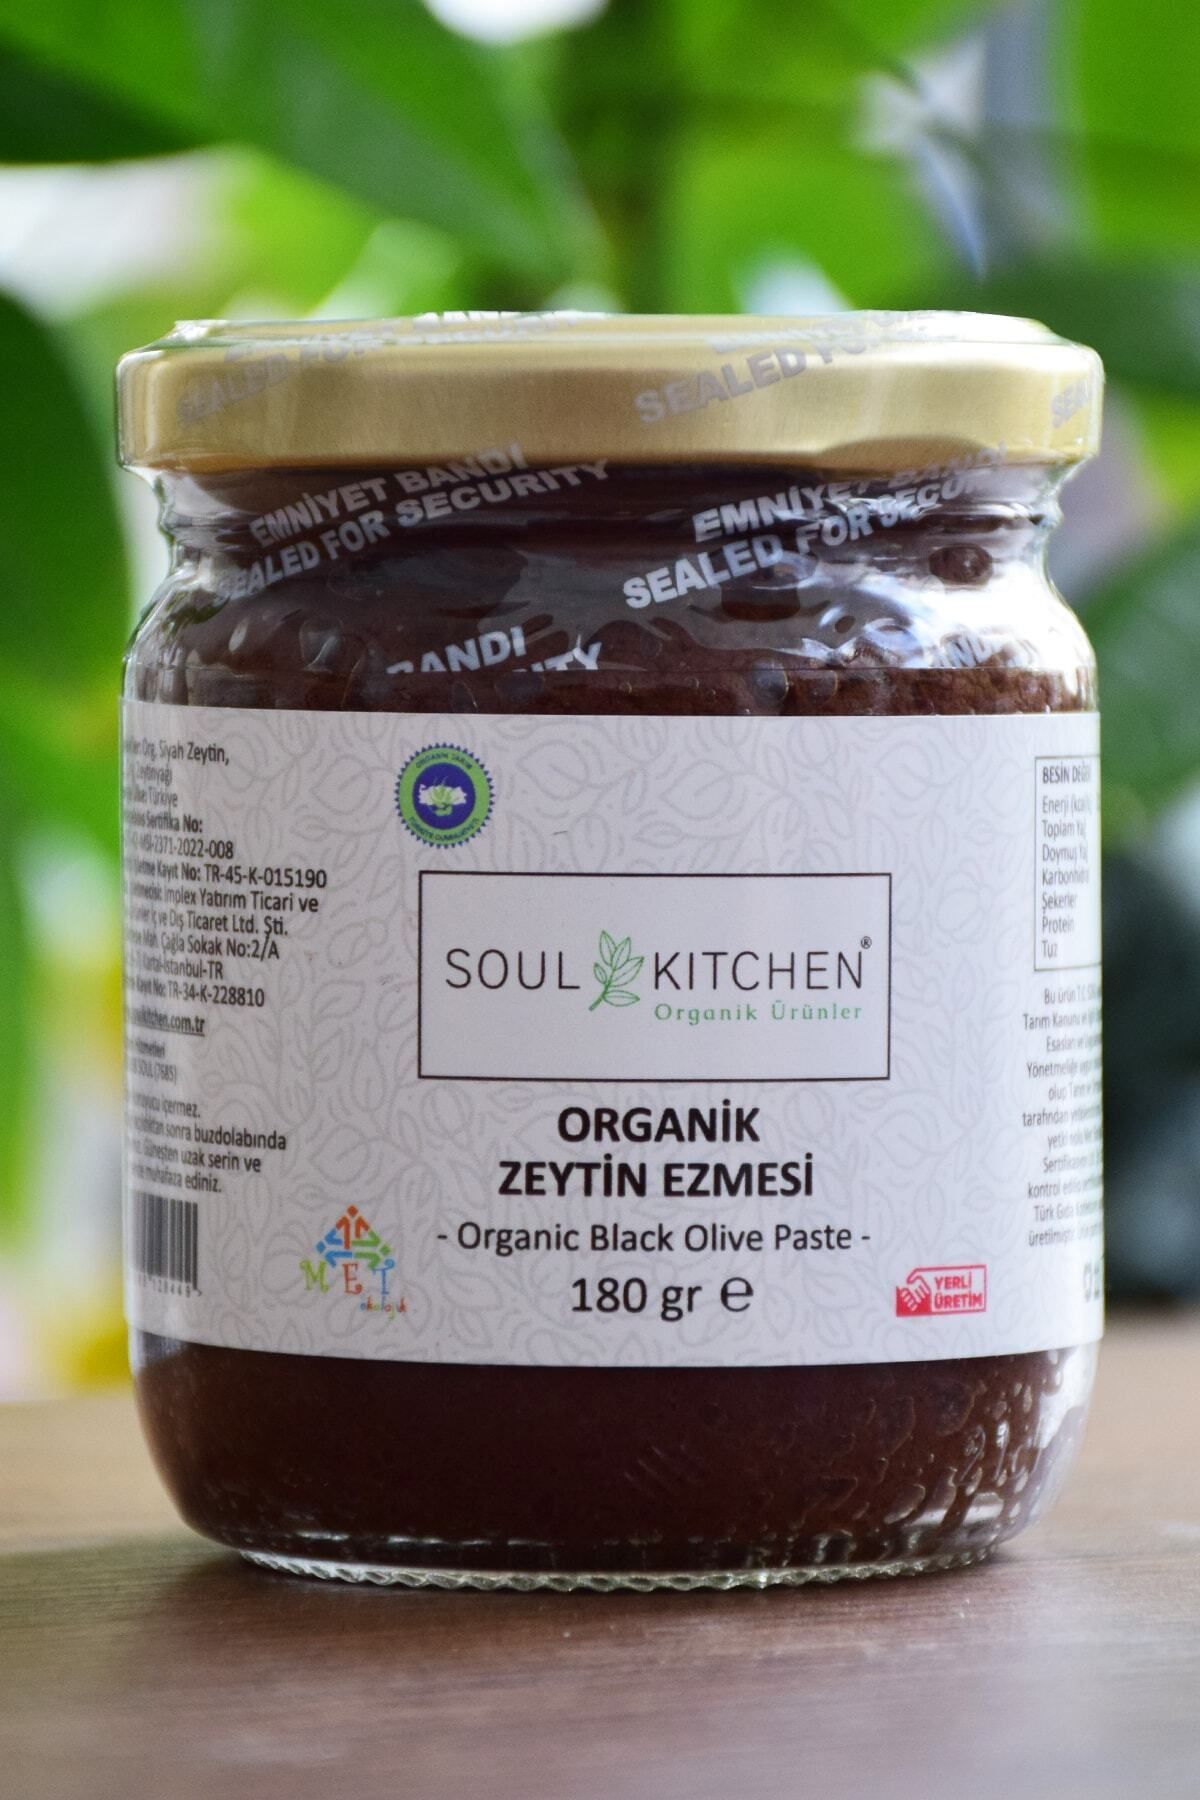 Soul Kitchen Organik Ürünler Organik Siyah Zeytin Ezmesi 180gr